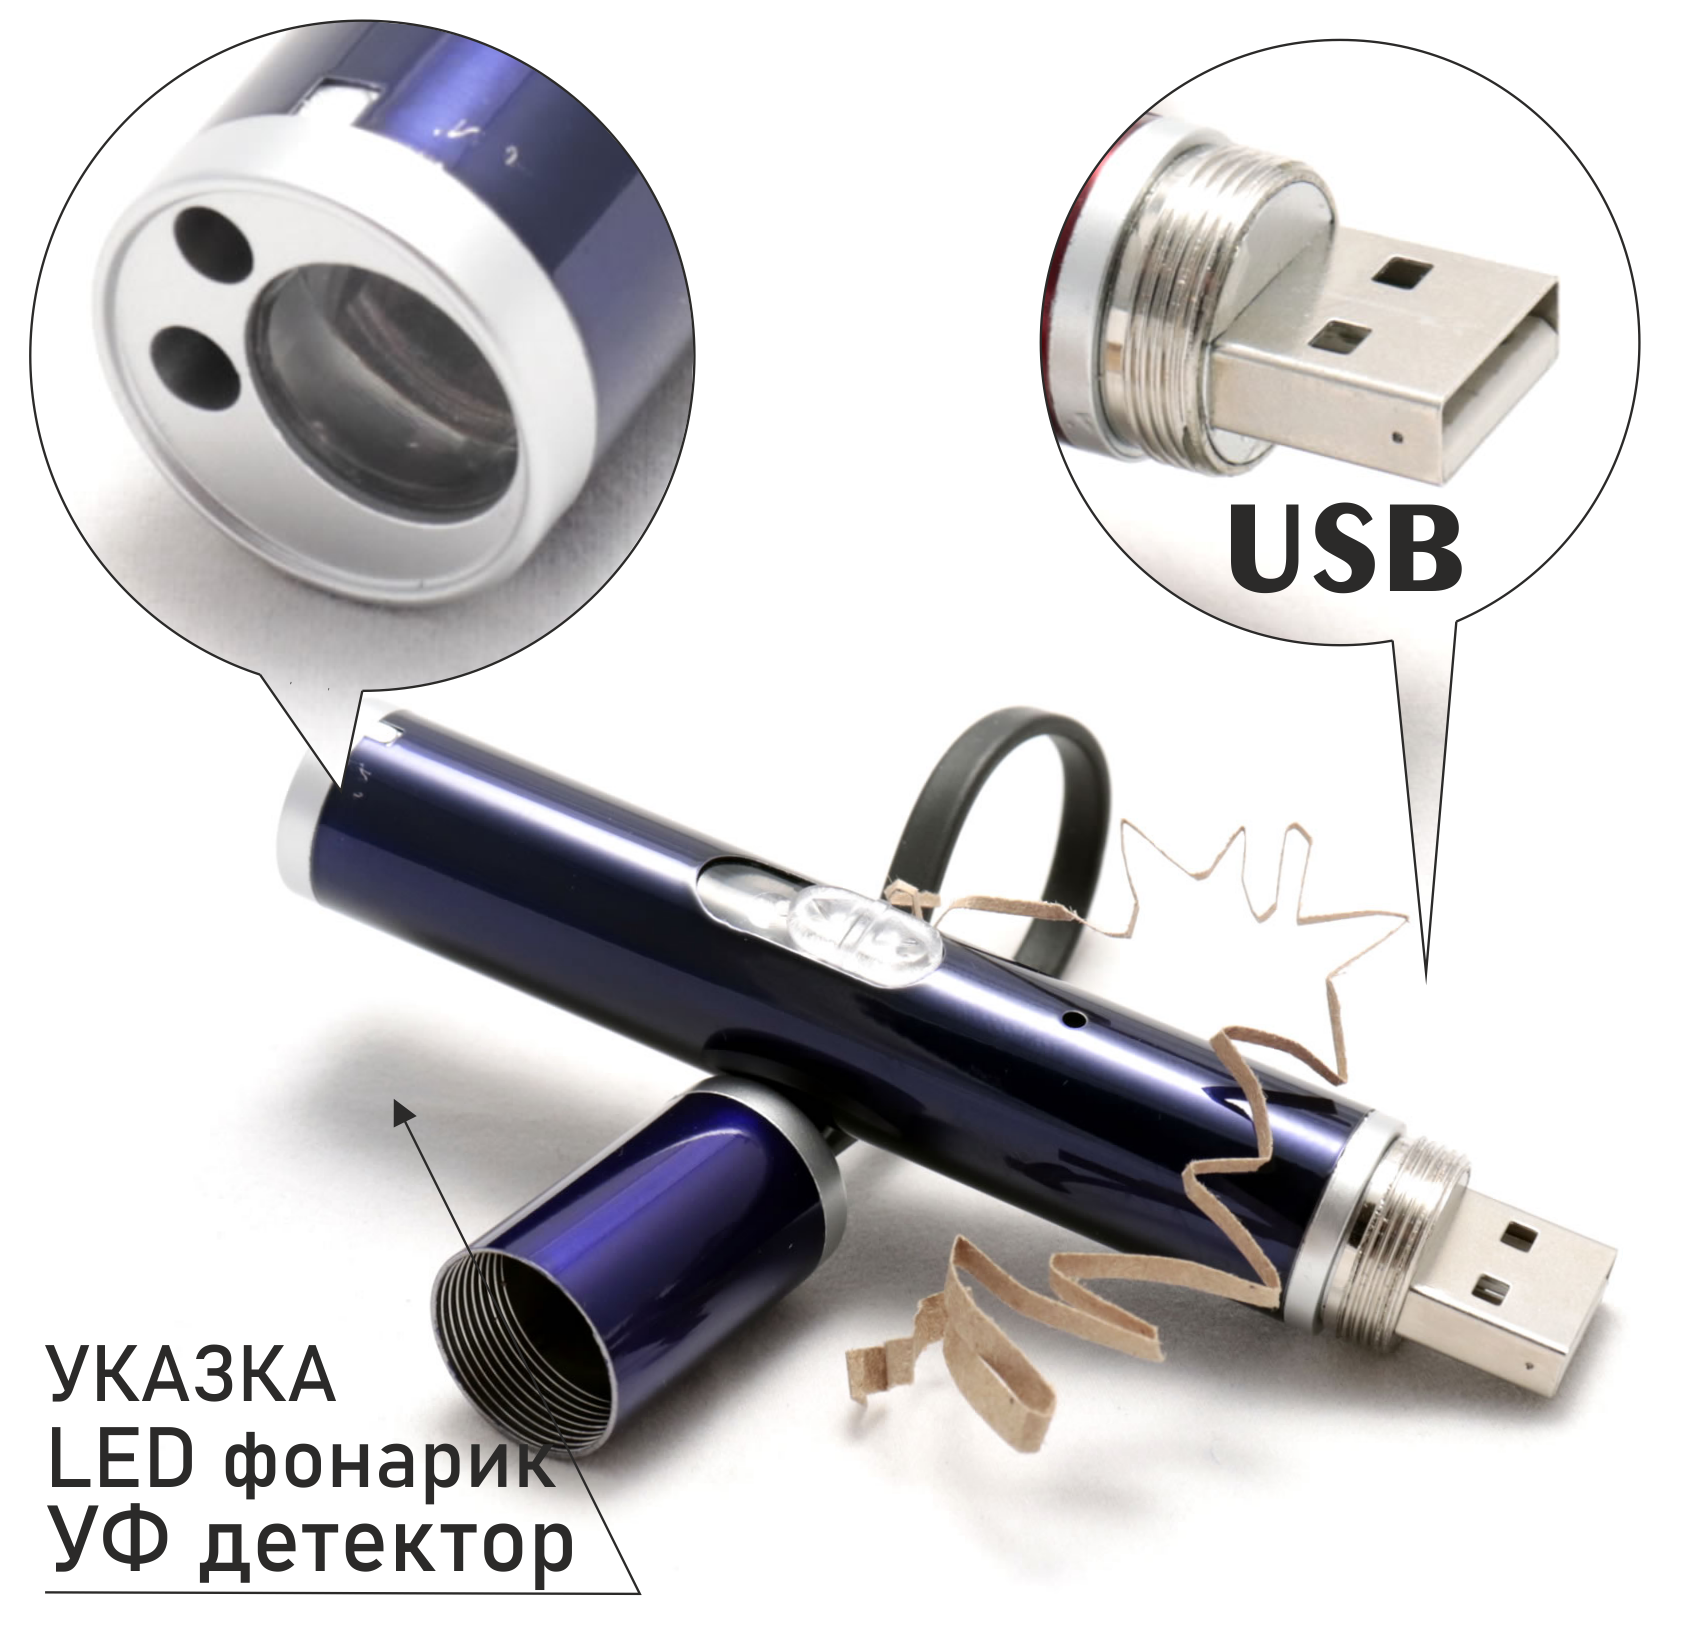 Лазерная указка USB с красным лучом и фонариком, алюминиевый корпус